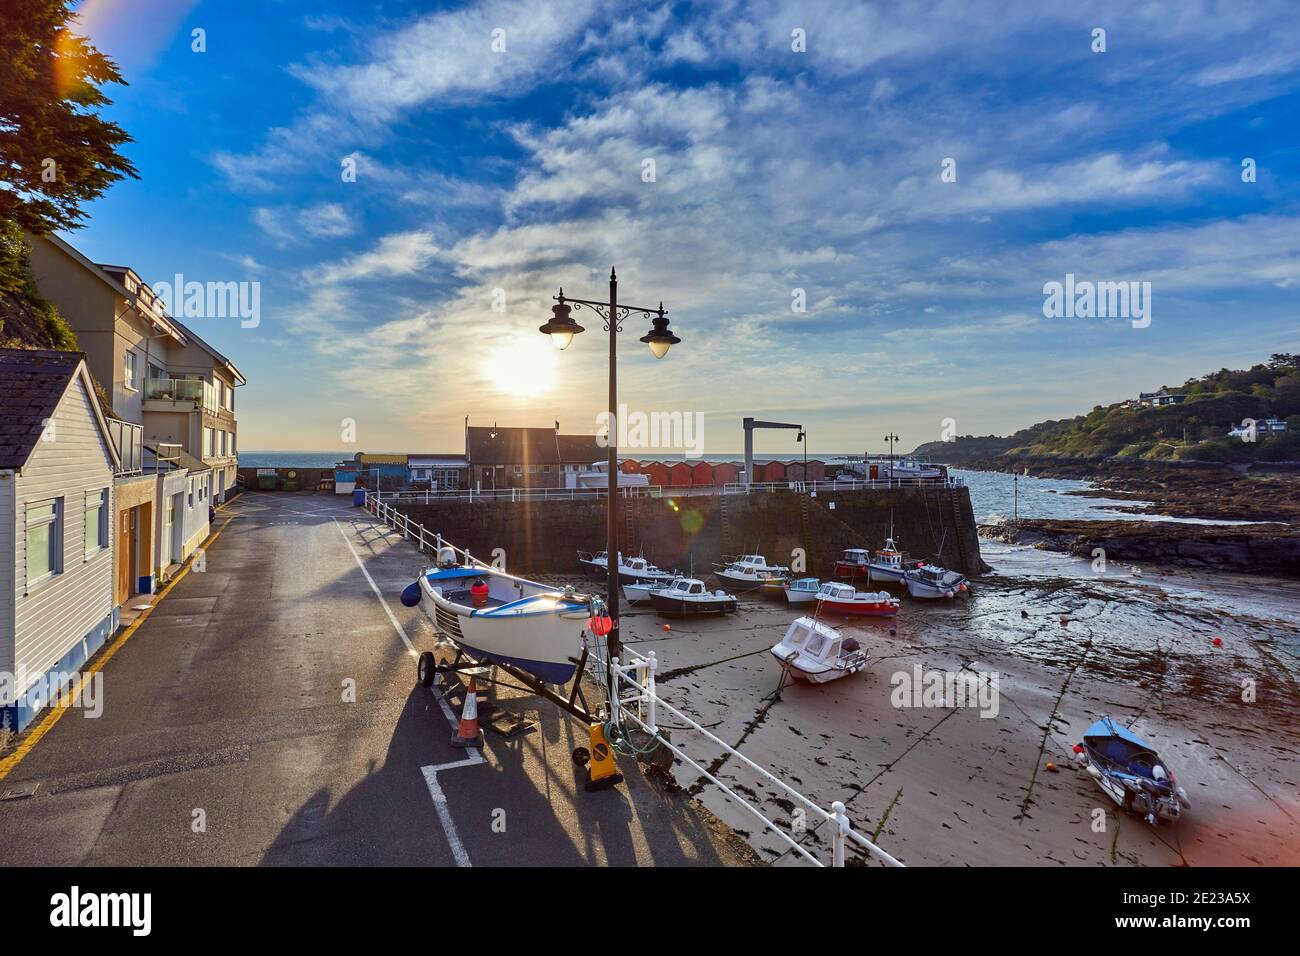 Immagine del porto a bassa marea a Rozel con piccoli battelli da pesca e di piacere all'alba. Rozel, St Martin, Jersey, Isole del canale Foto Stock